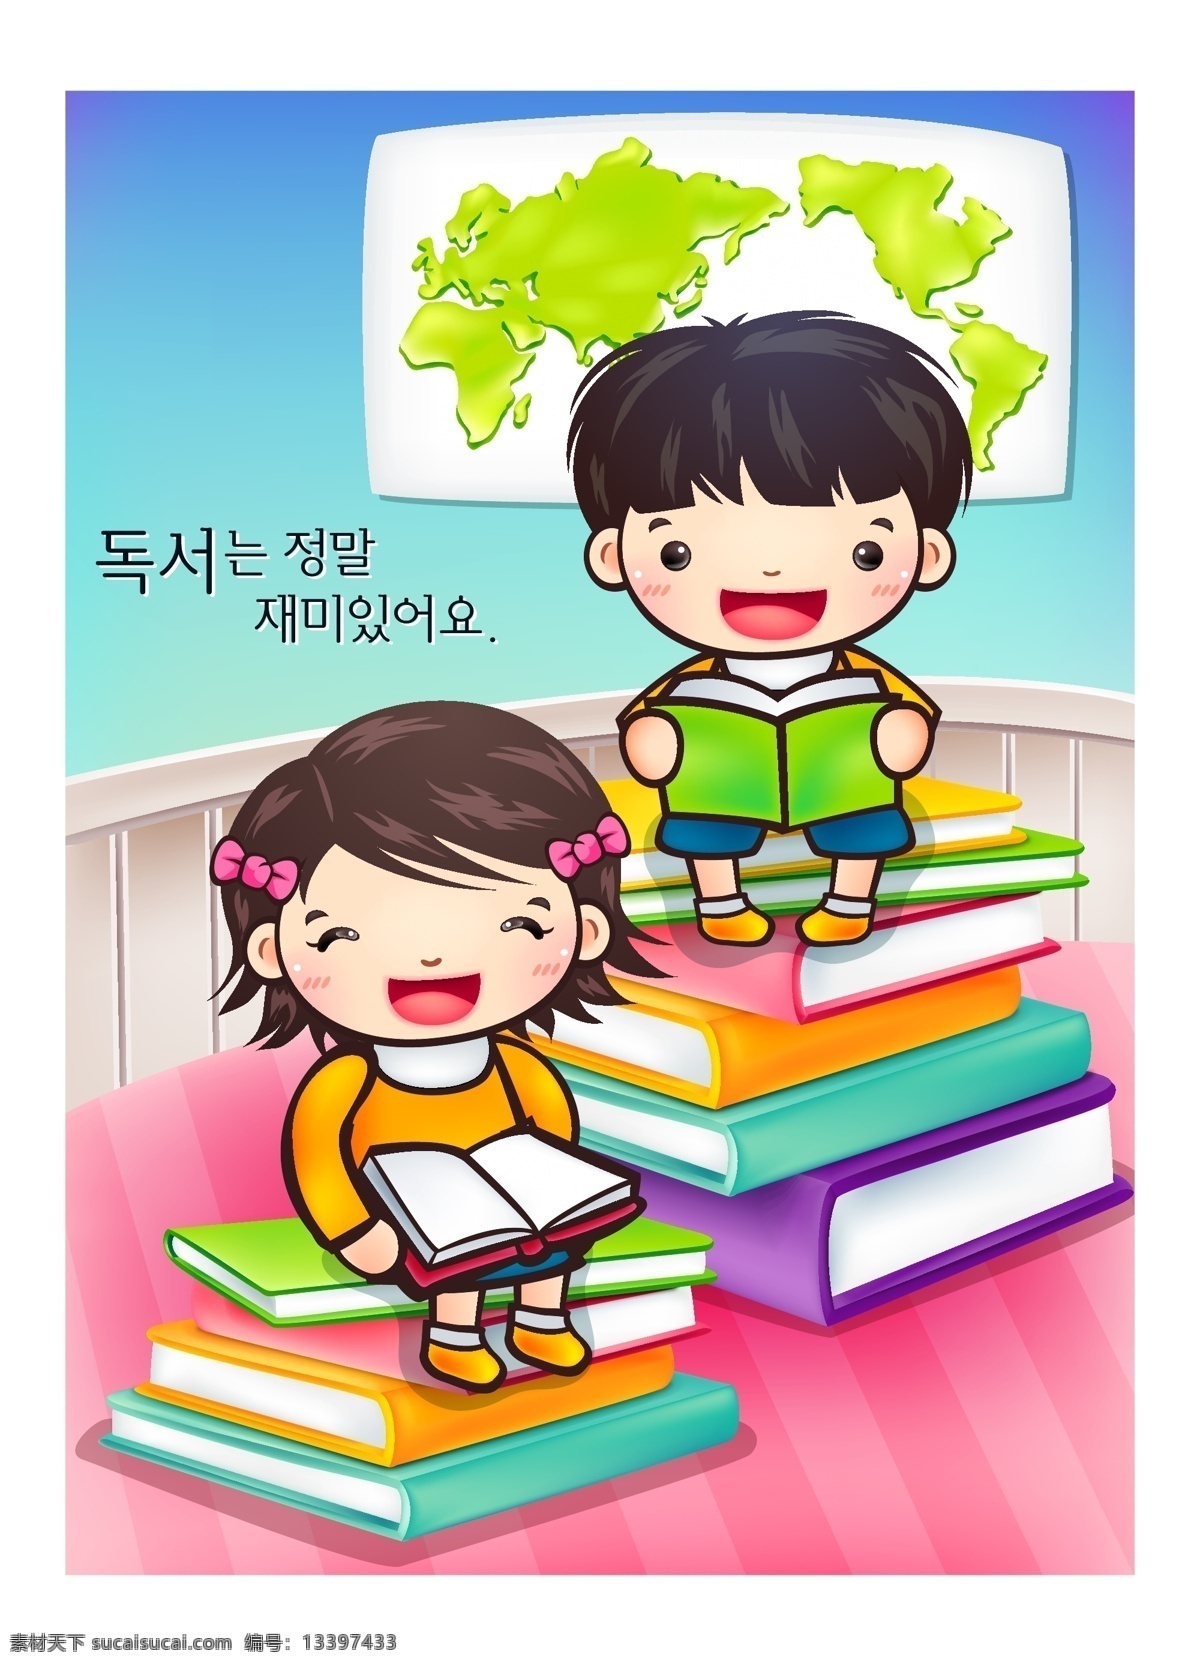 学生 卡通人物 韩文 书本 男孩女孩 卡通女孩 卡通男孩 红色地板 五彩书籍 人物图库